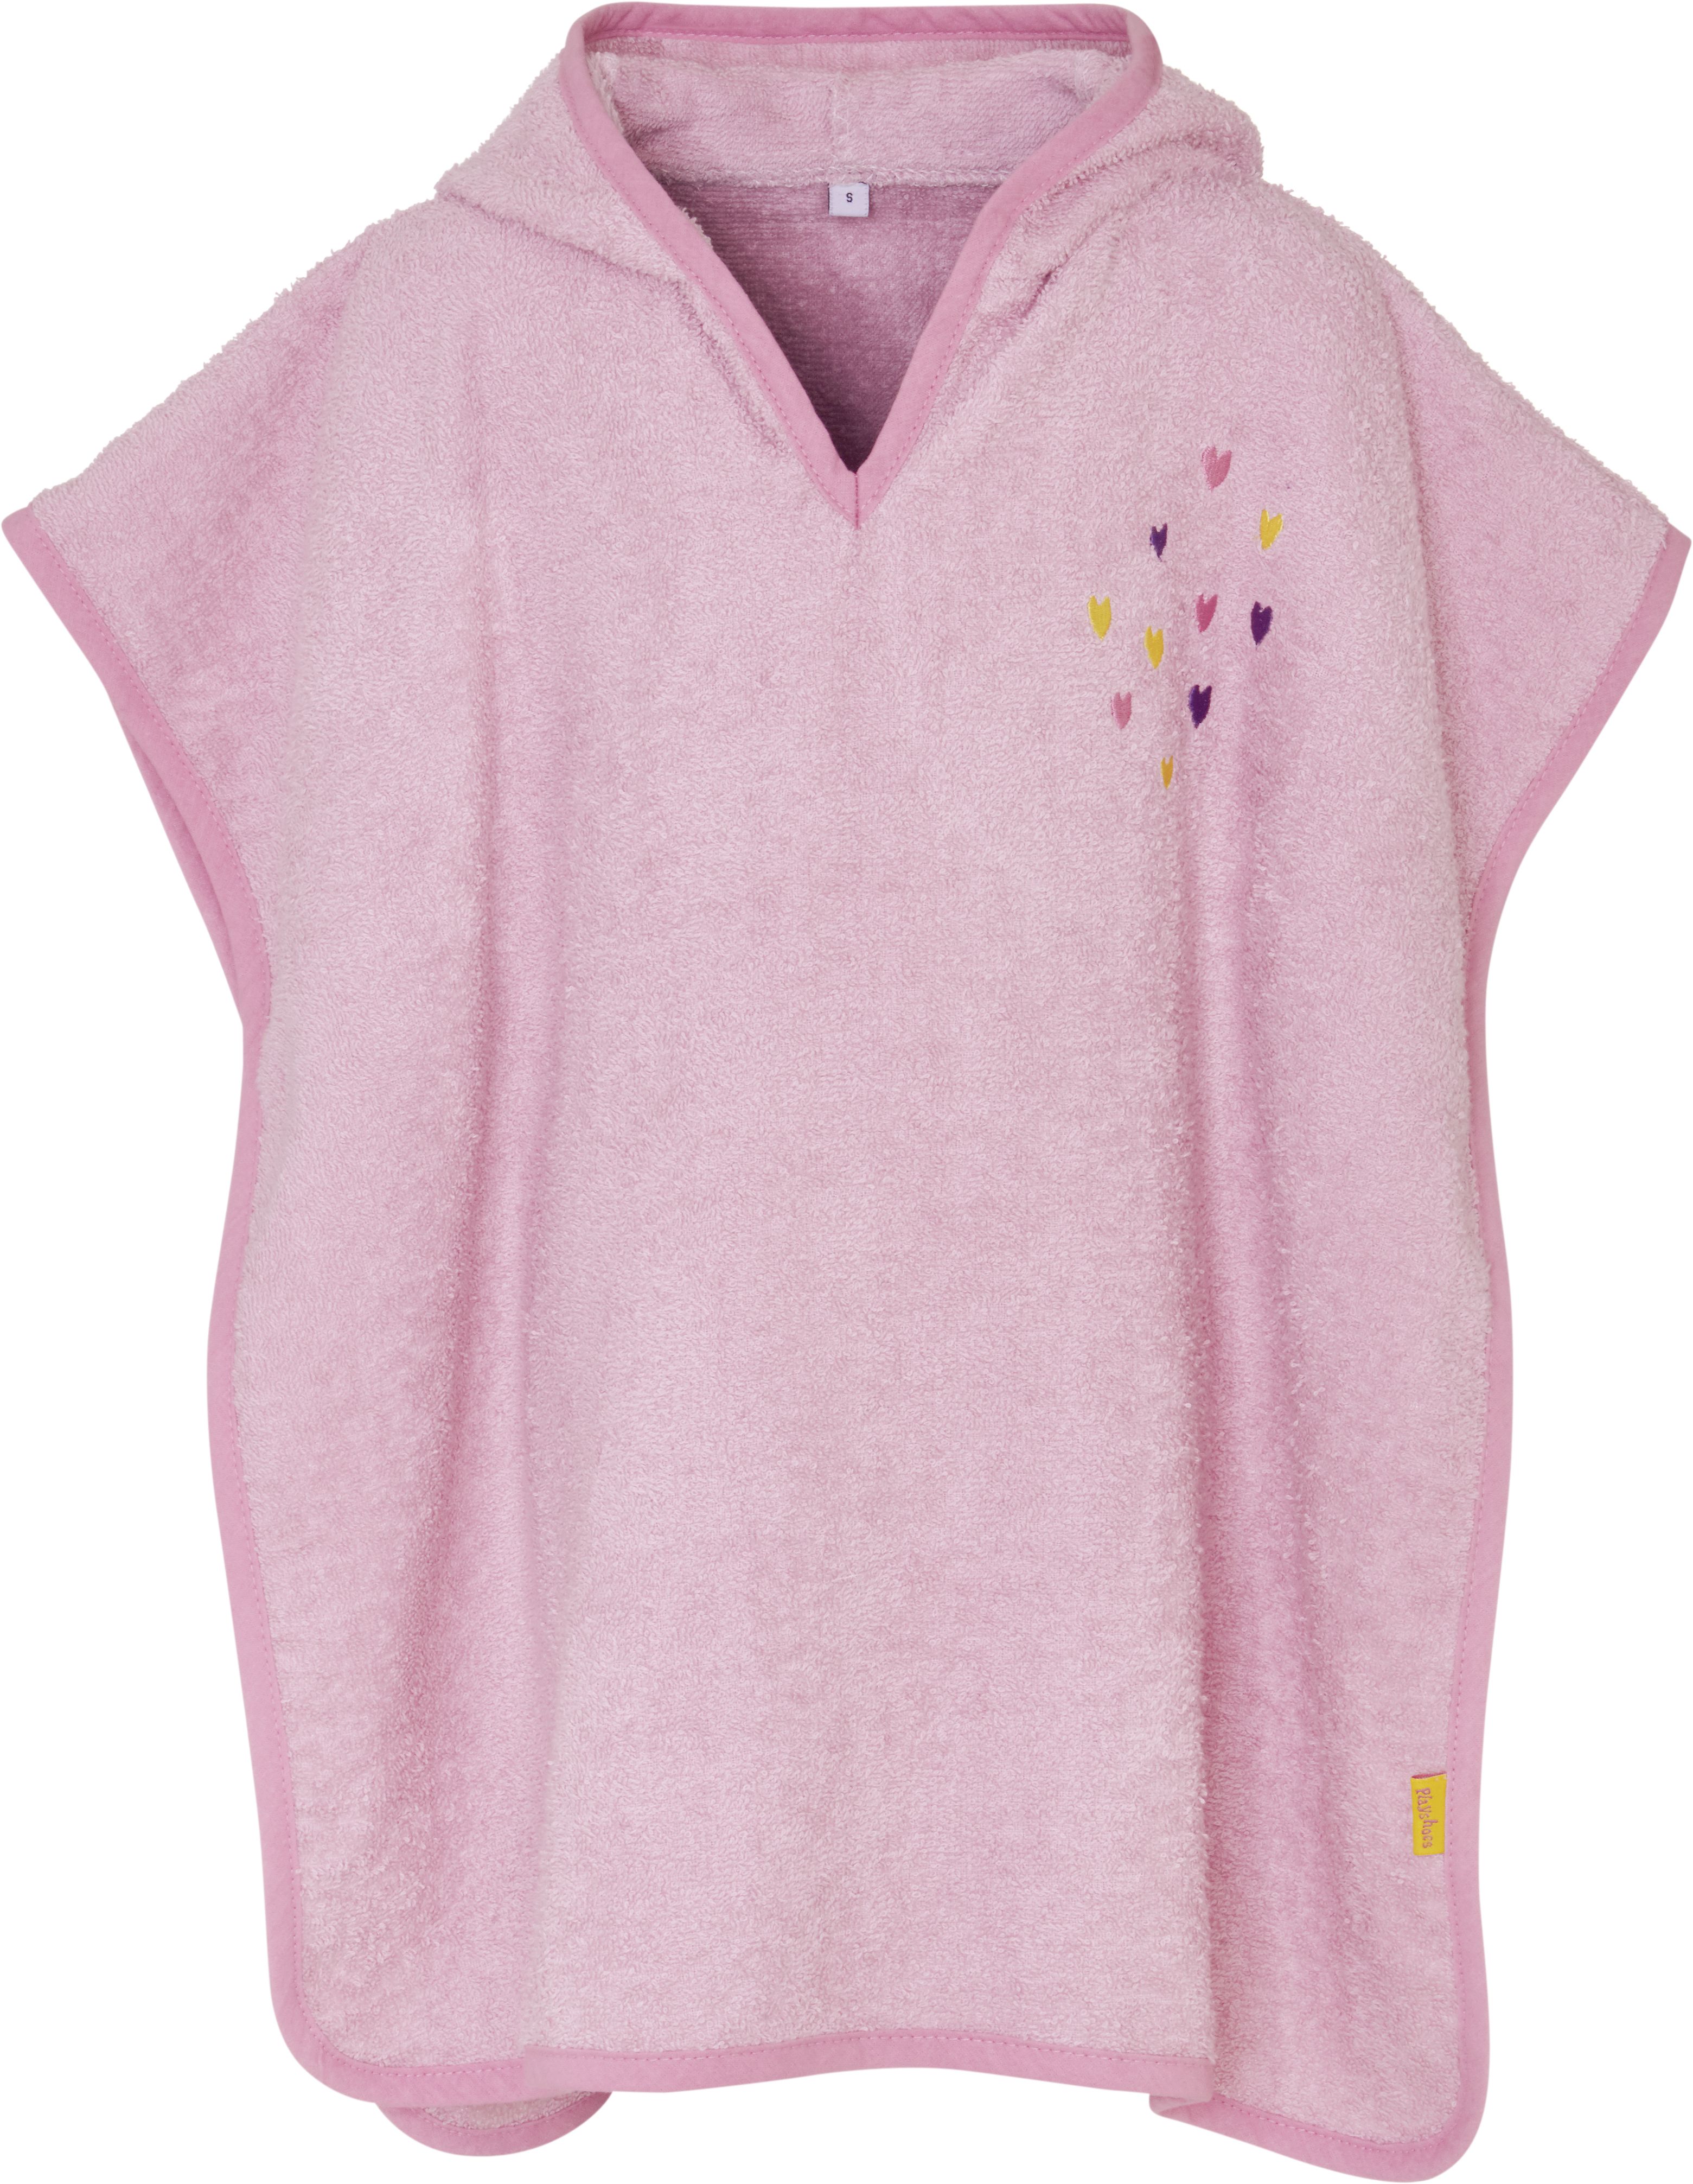 Халат детский Playshoes 340054, розовый, 110 ночник светодиодный фотон единорожка kss08 с выключателем розовый